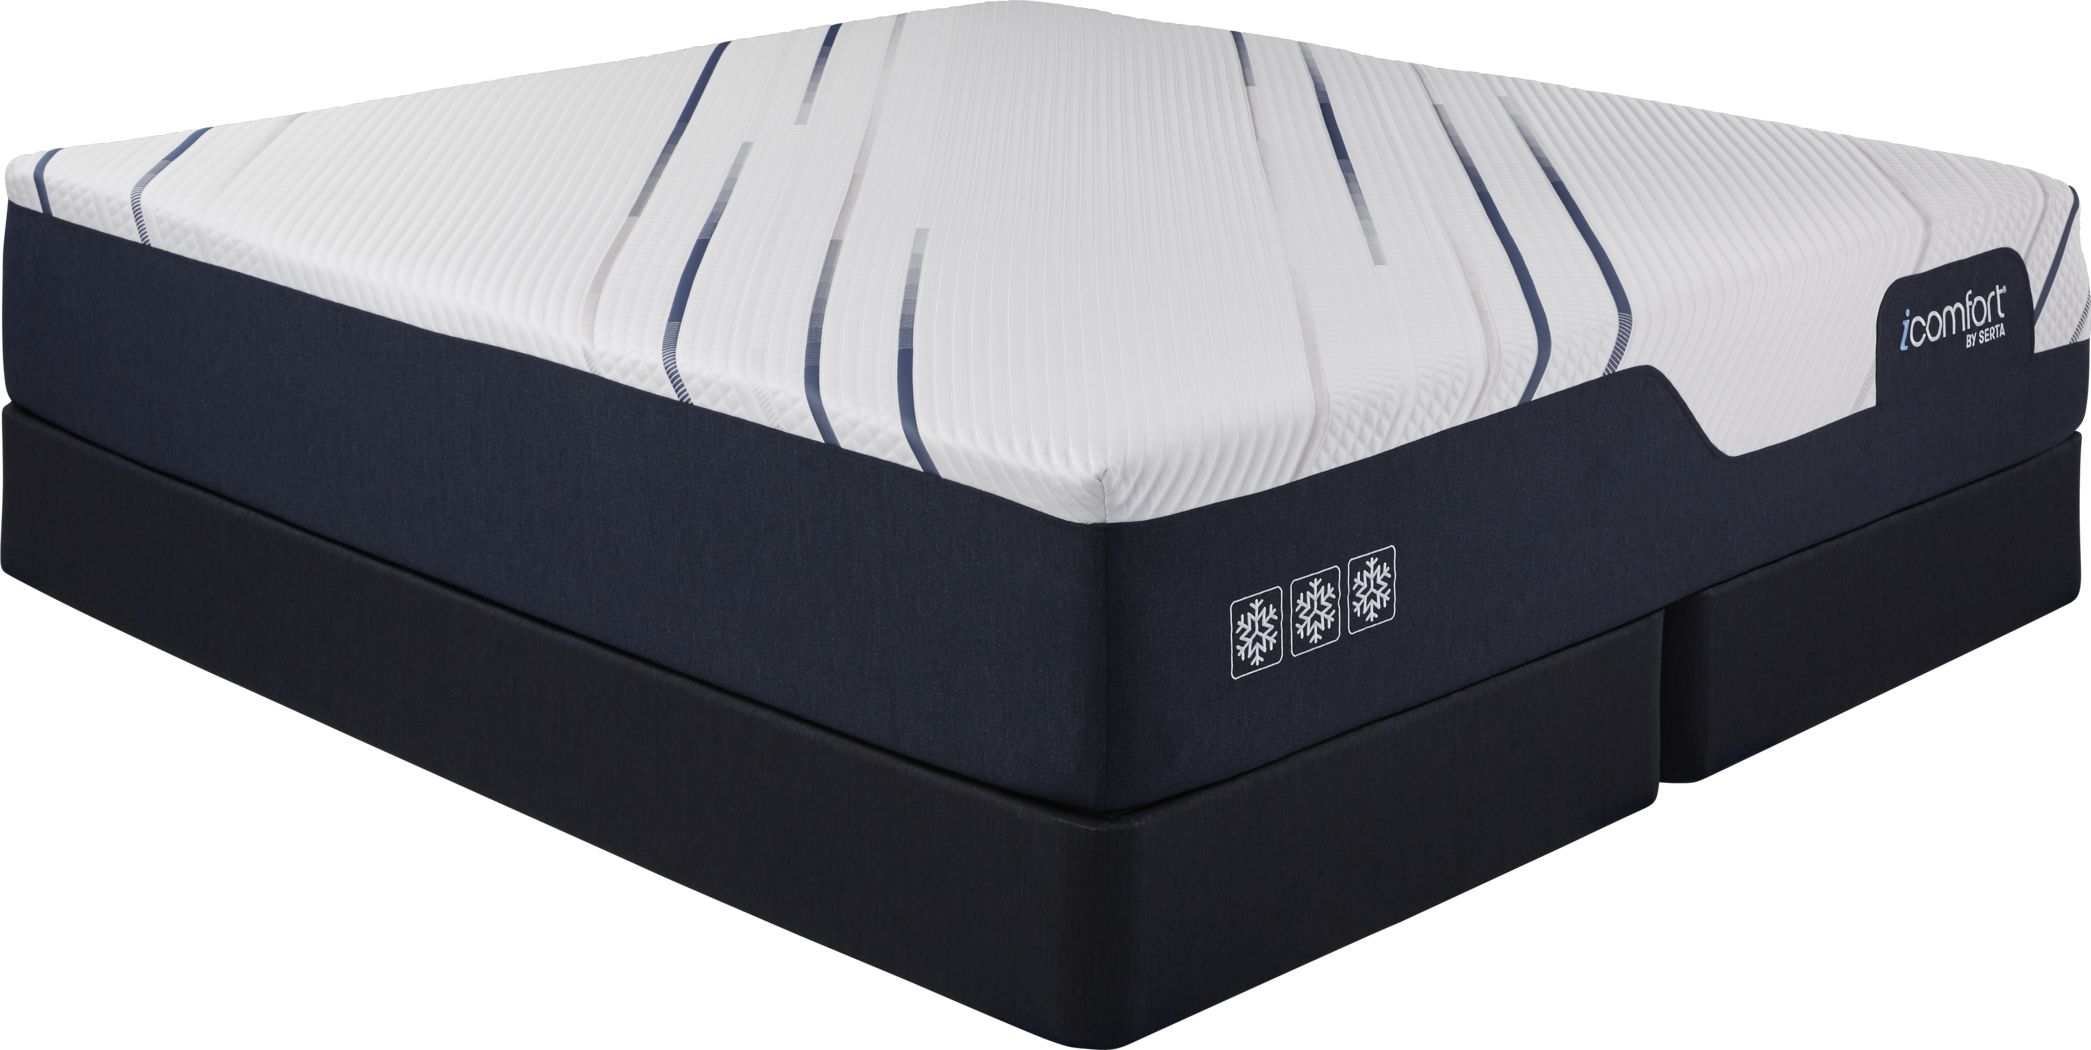 serta icomfort genius king mattress set